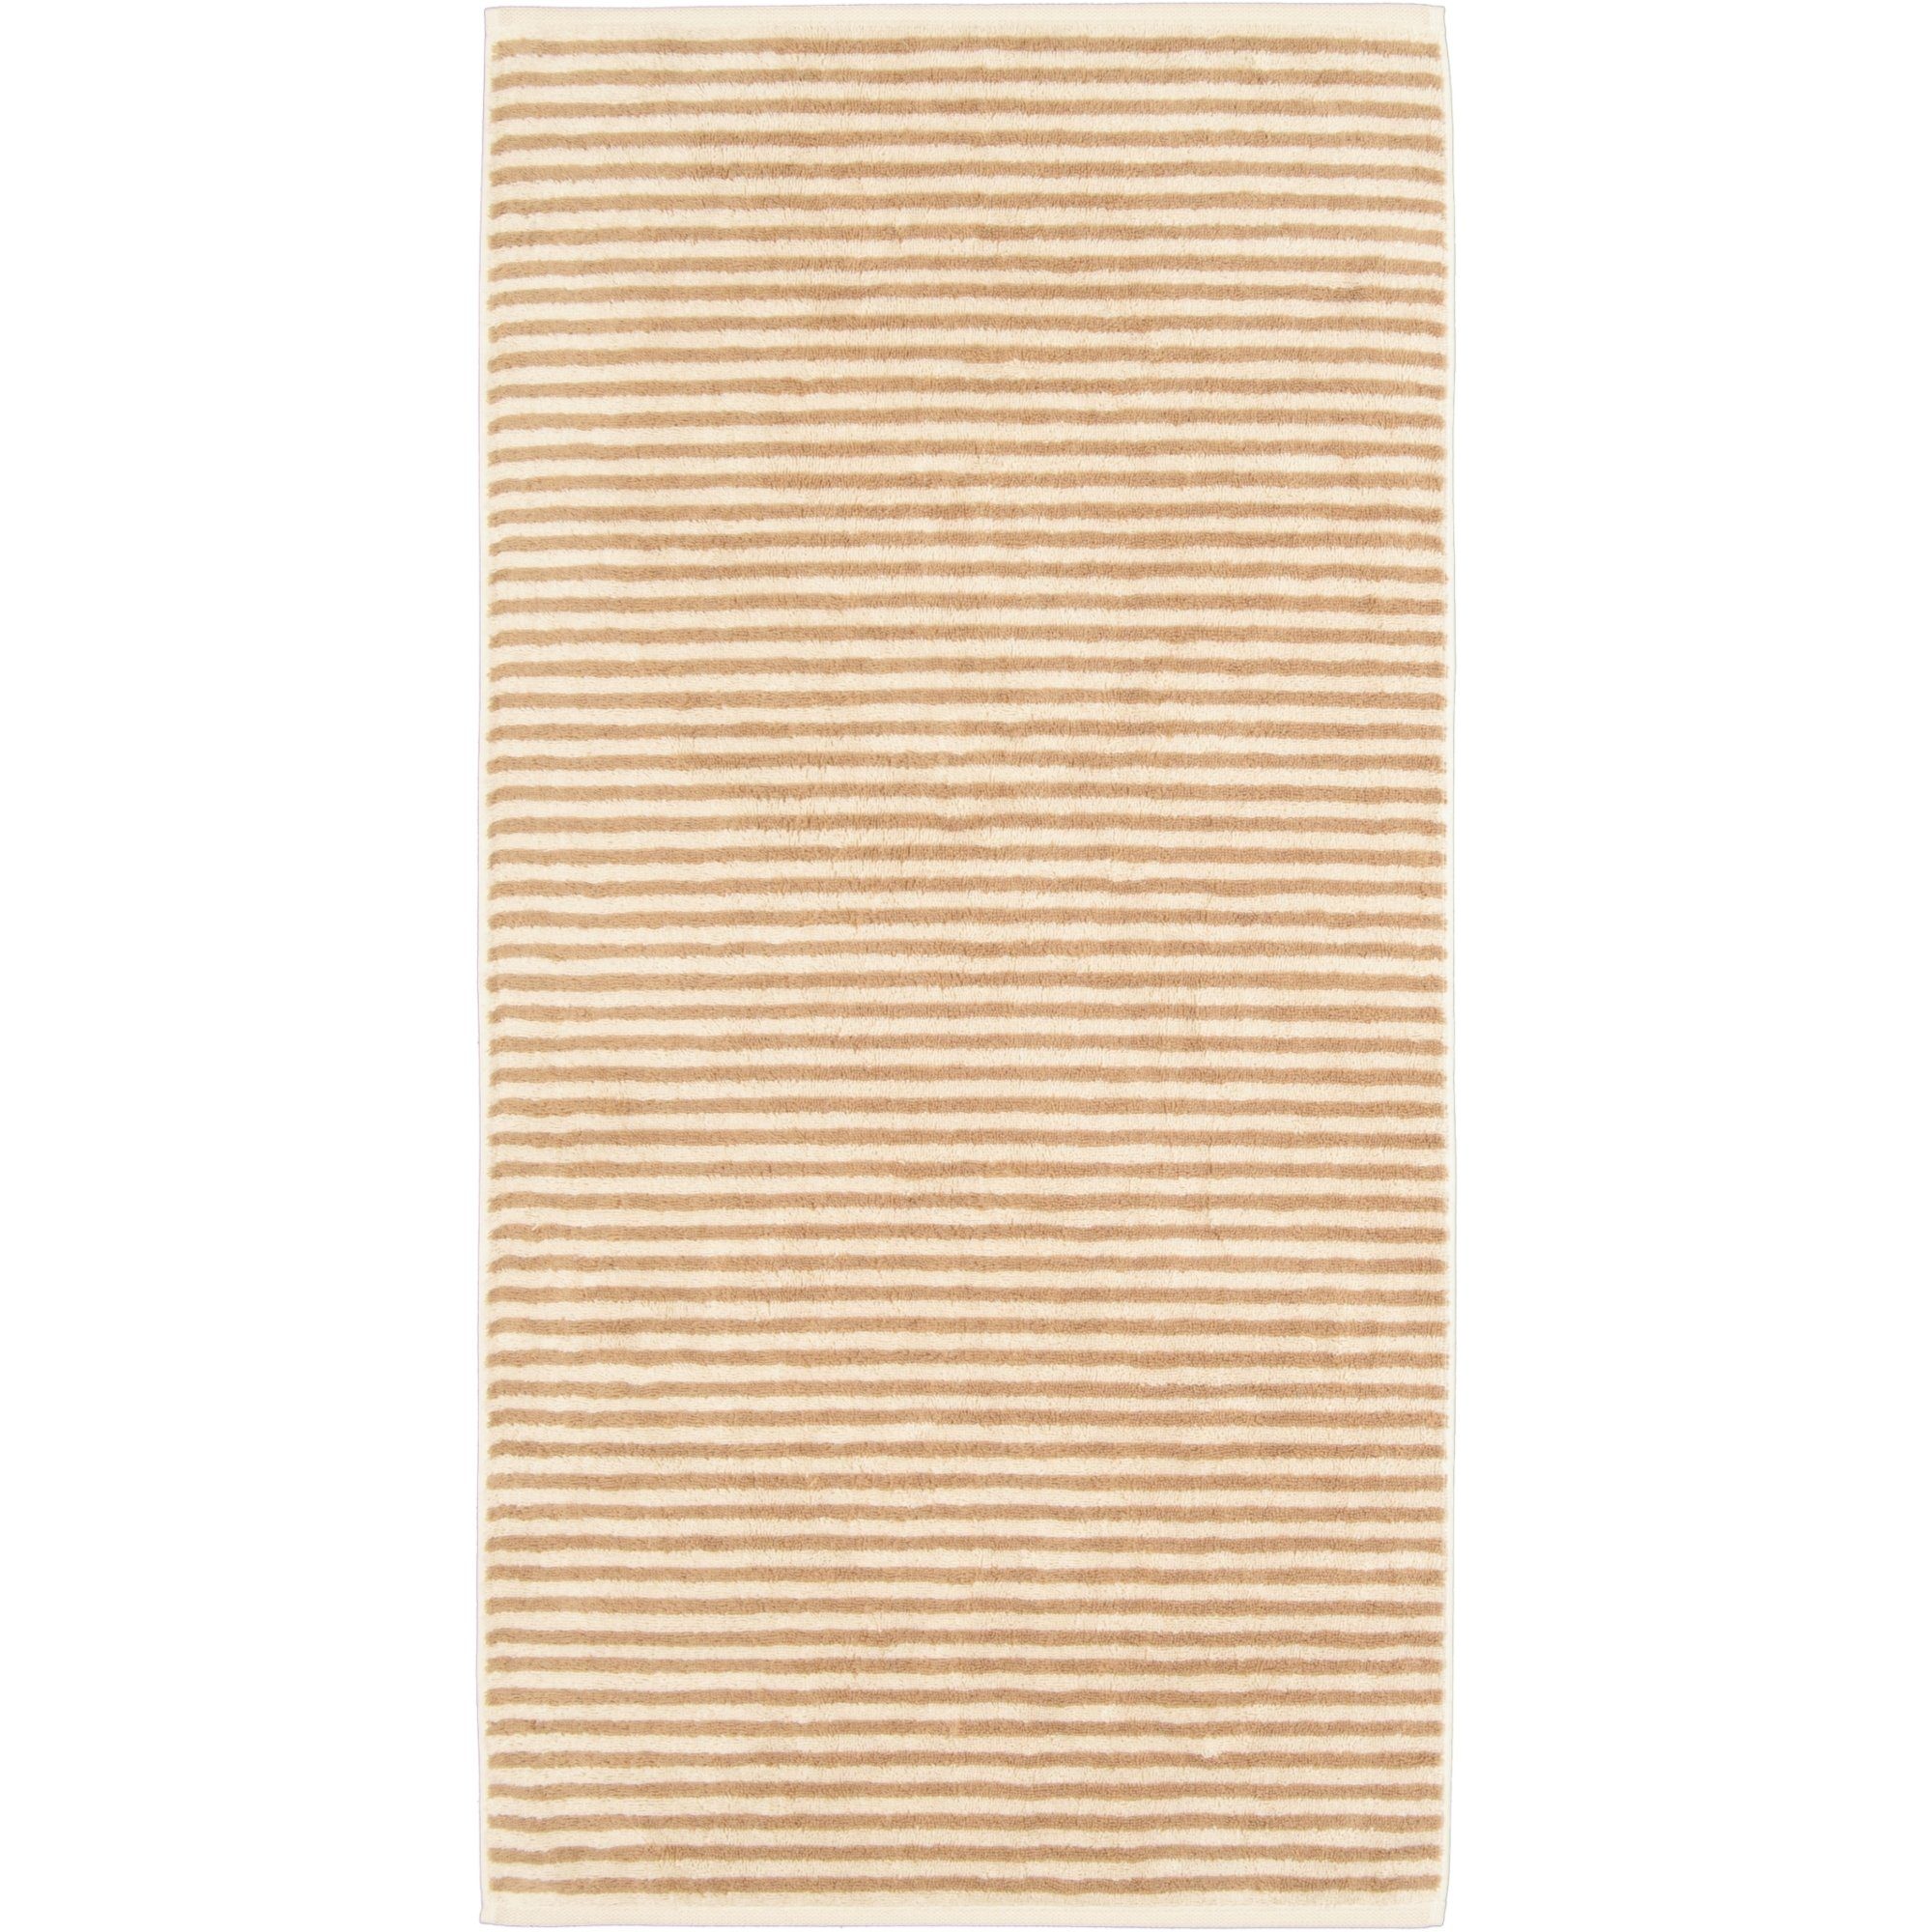 Cawö Handtücher Natural Streifen 6216, 100% Baumwolle